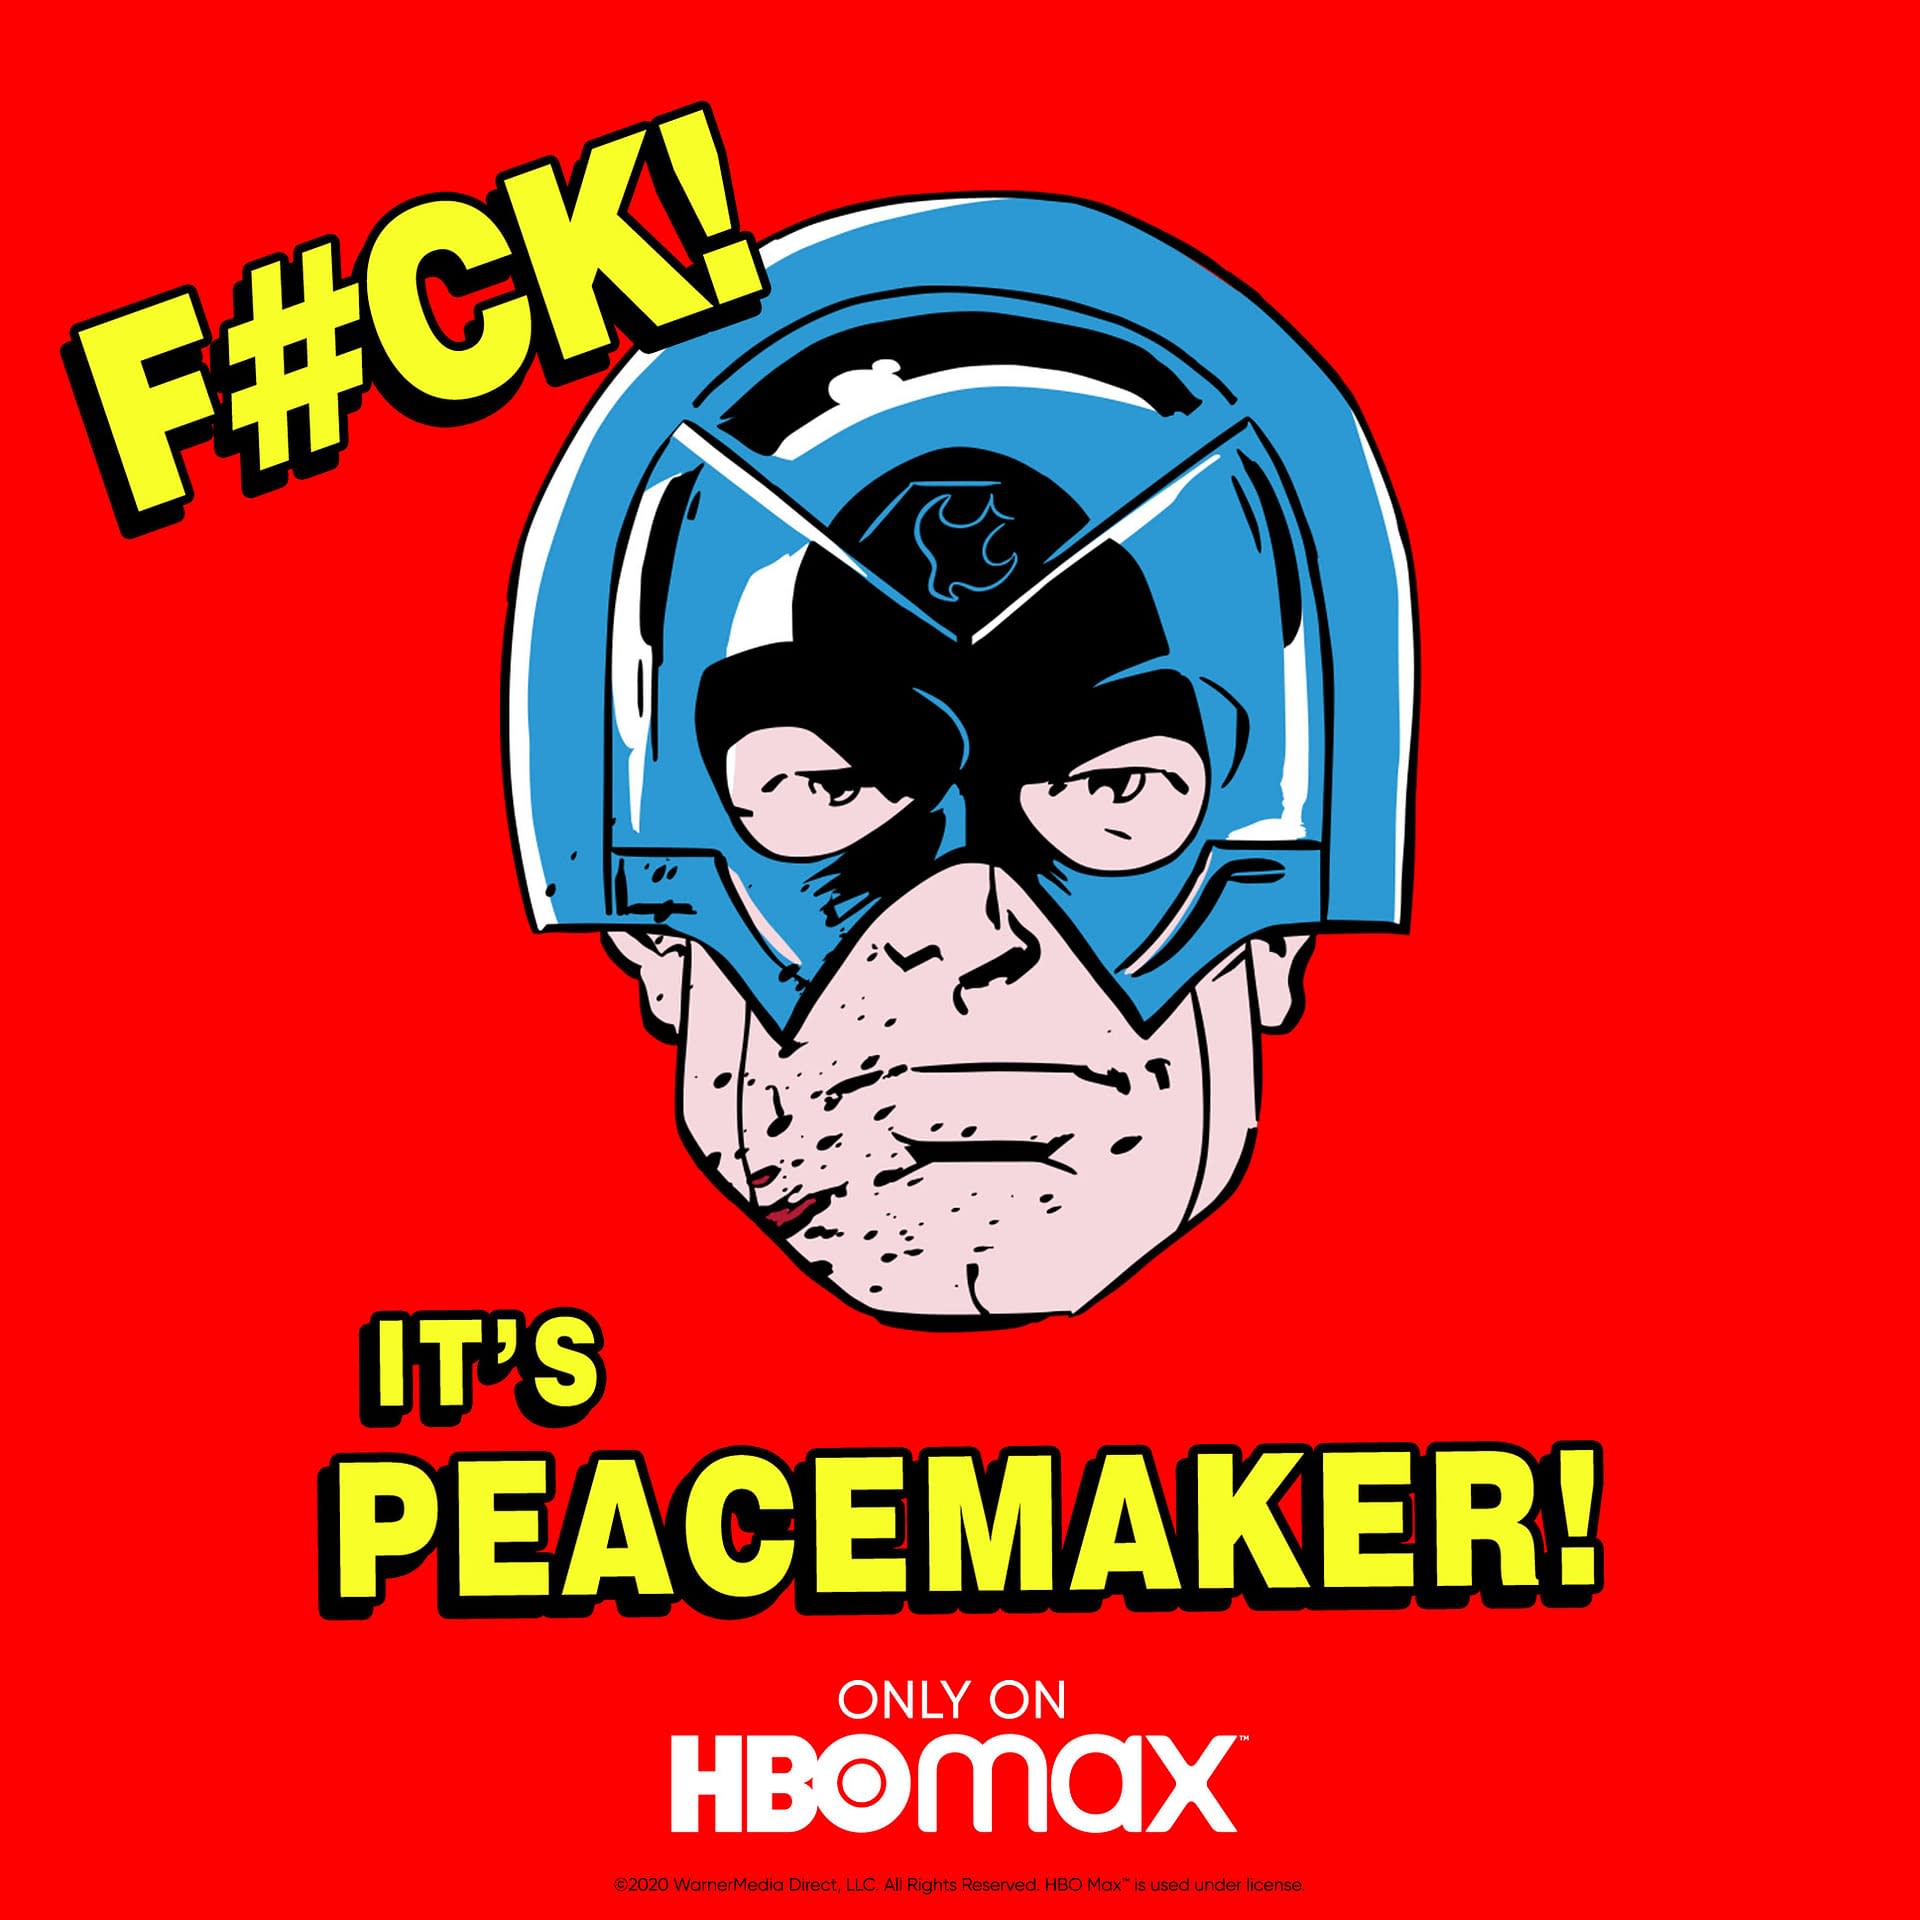 Dc Peacemaker Helmet Logo Wallpapers